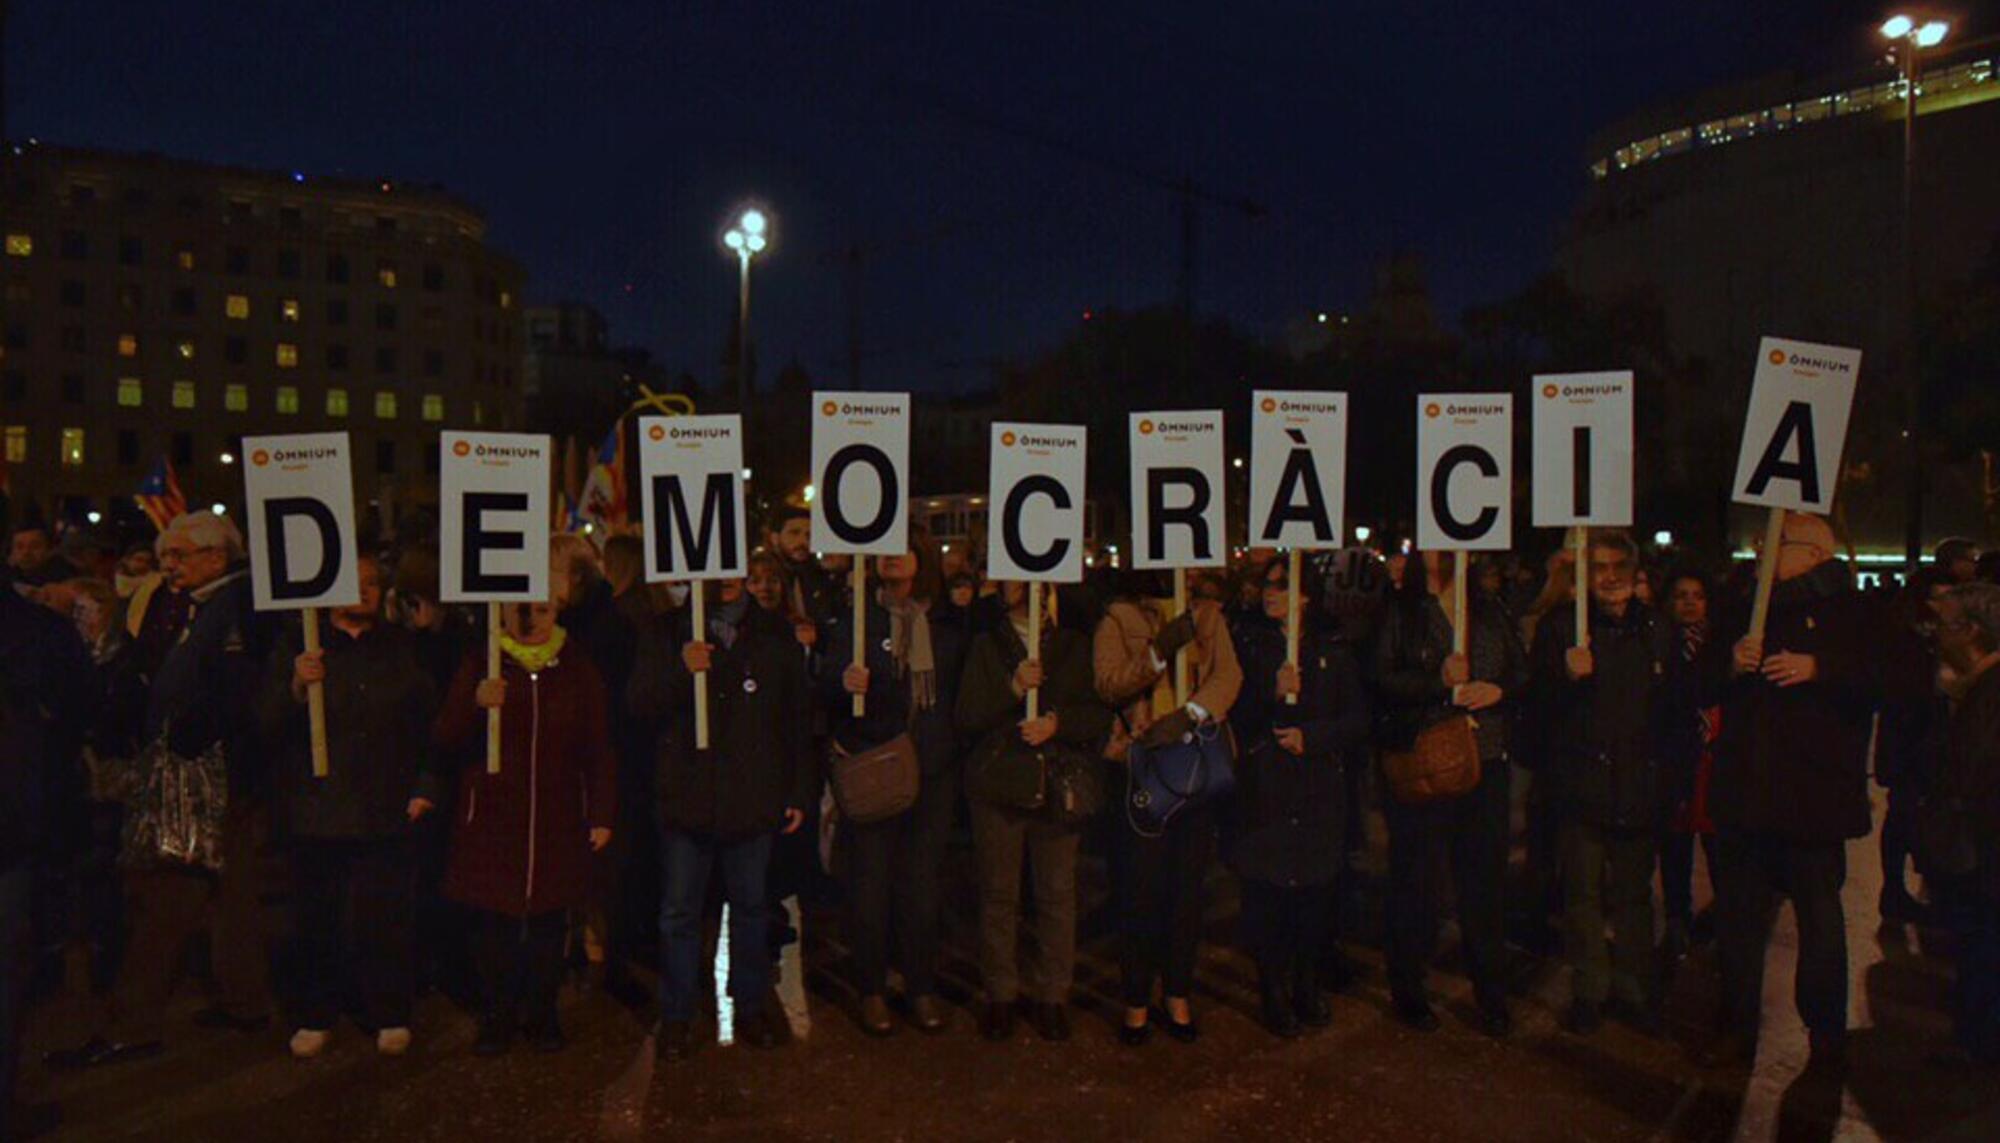 Barcelona Proces Democracia